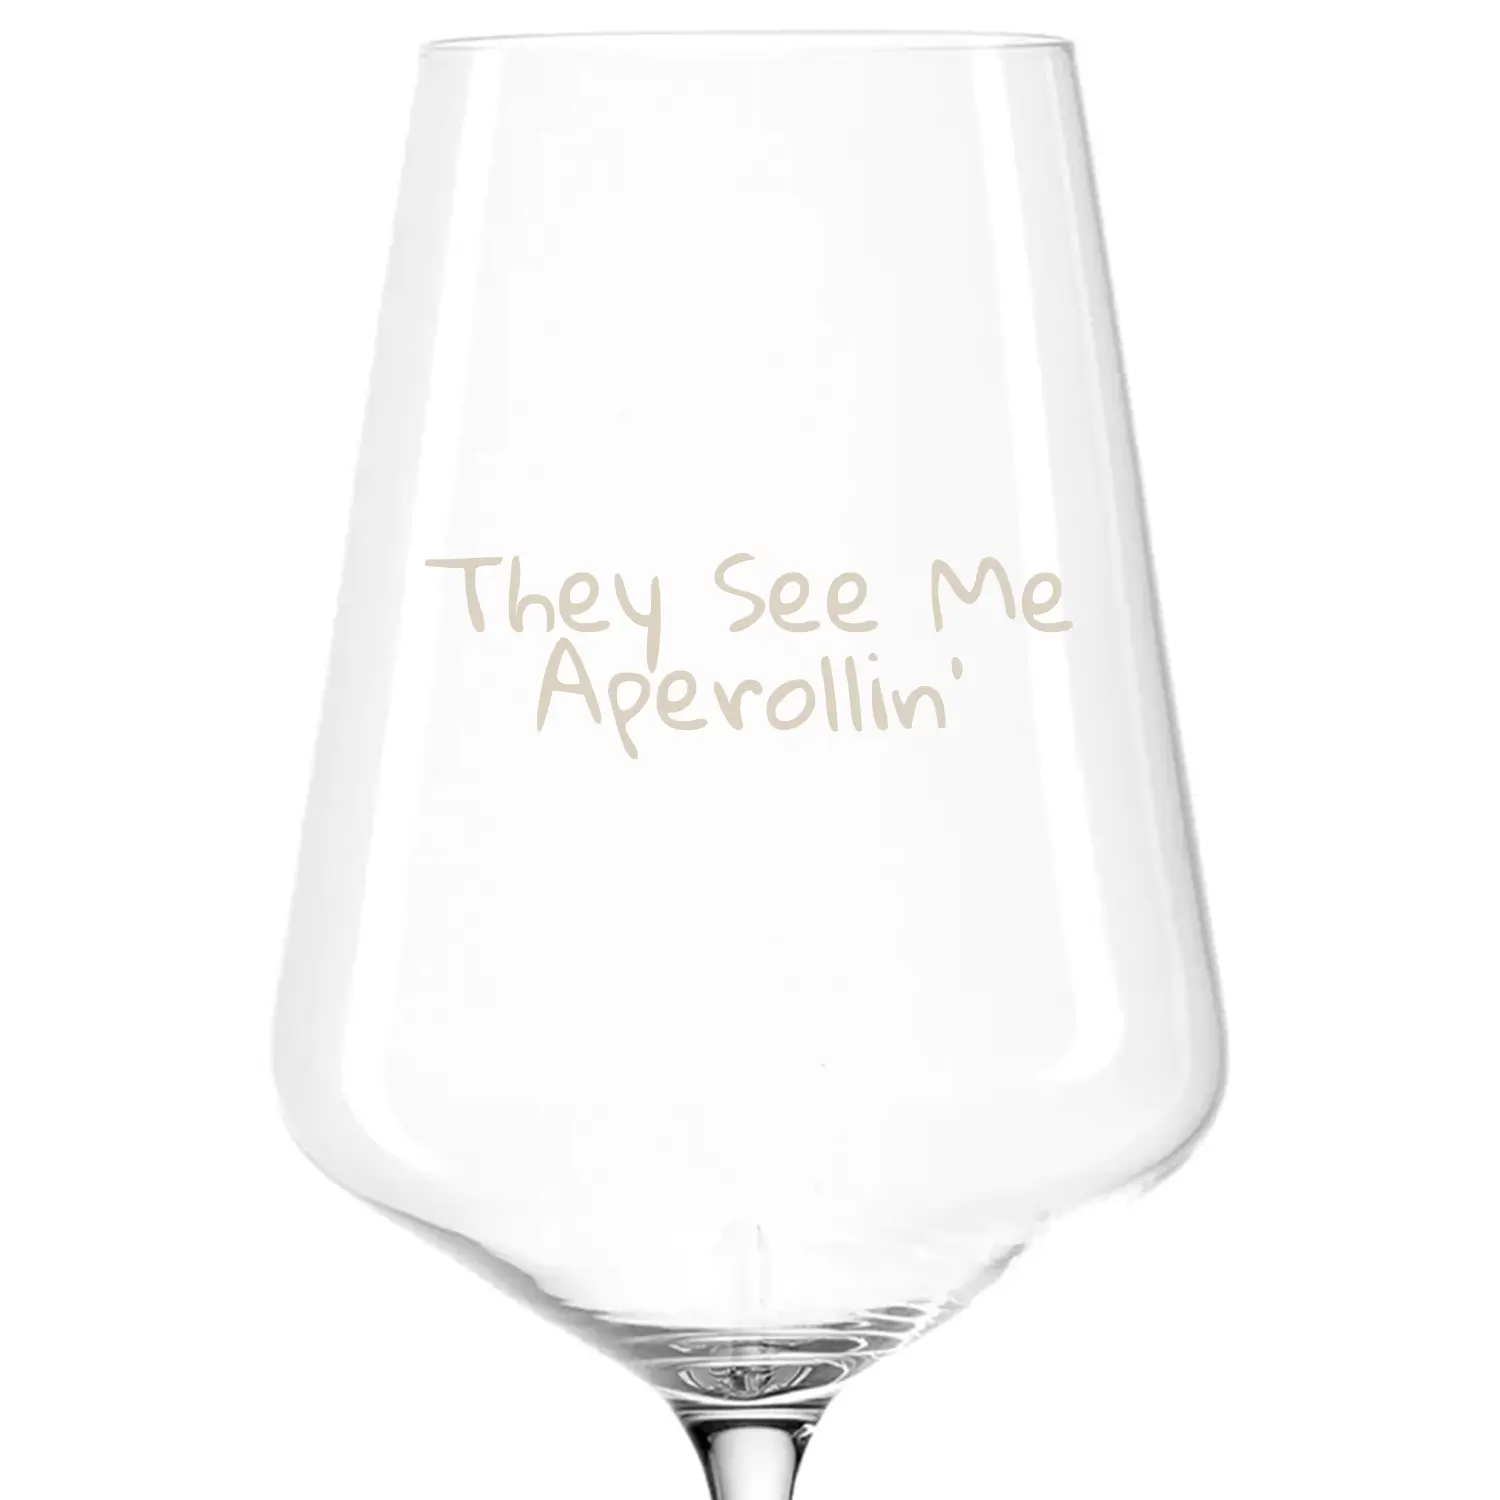 Aperol Spritz Glas - They see me aperollin'